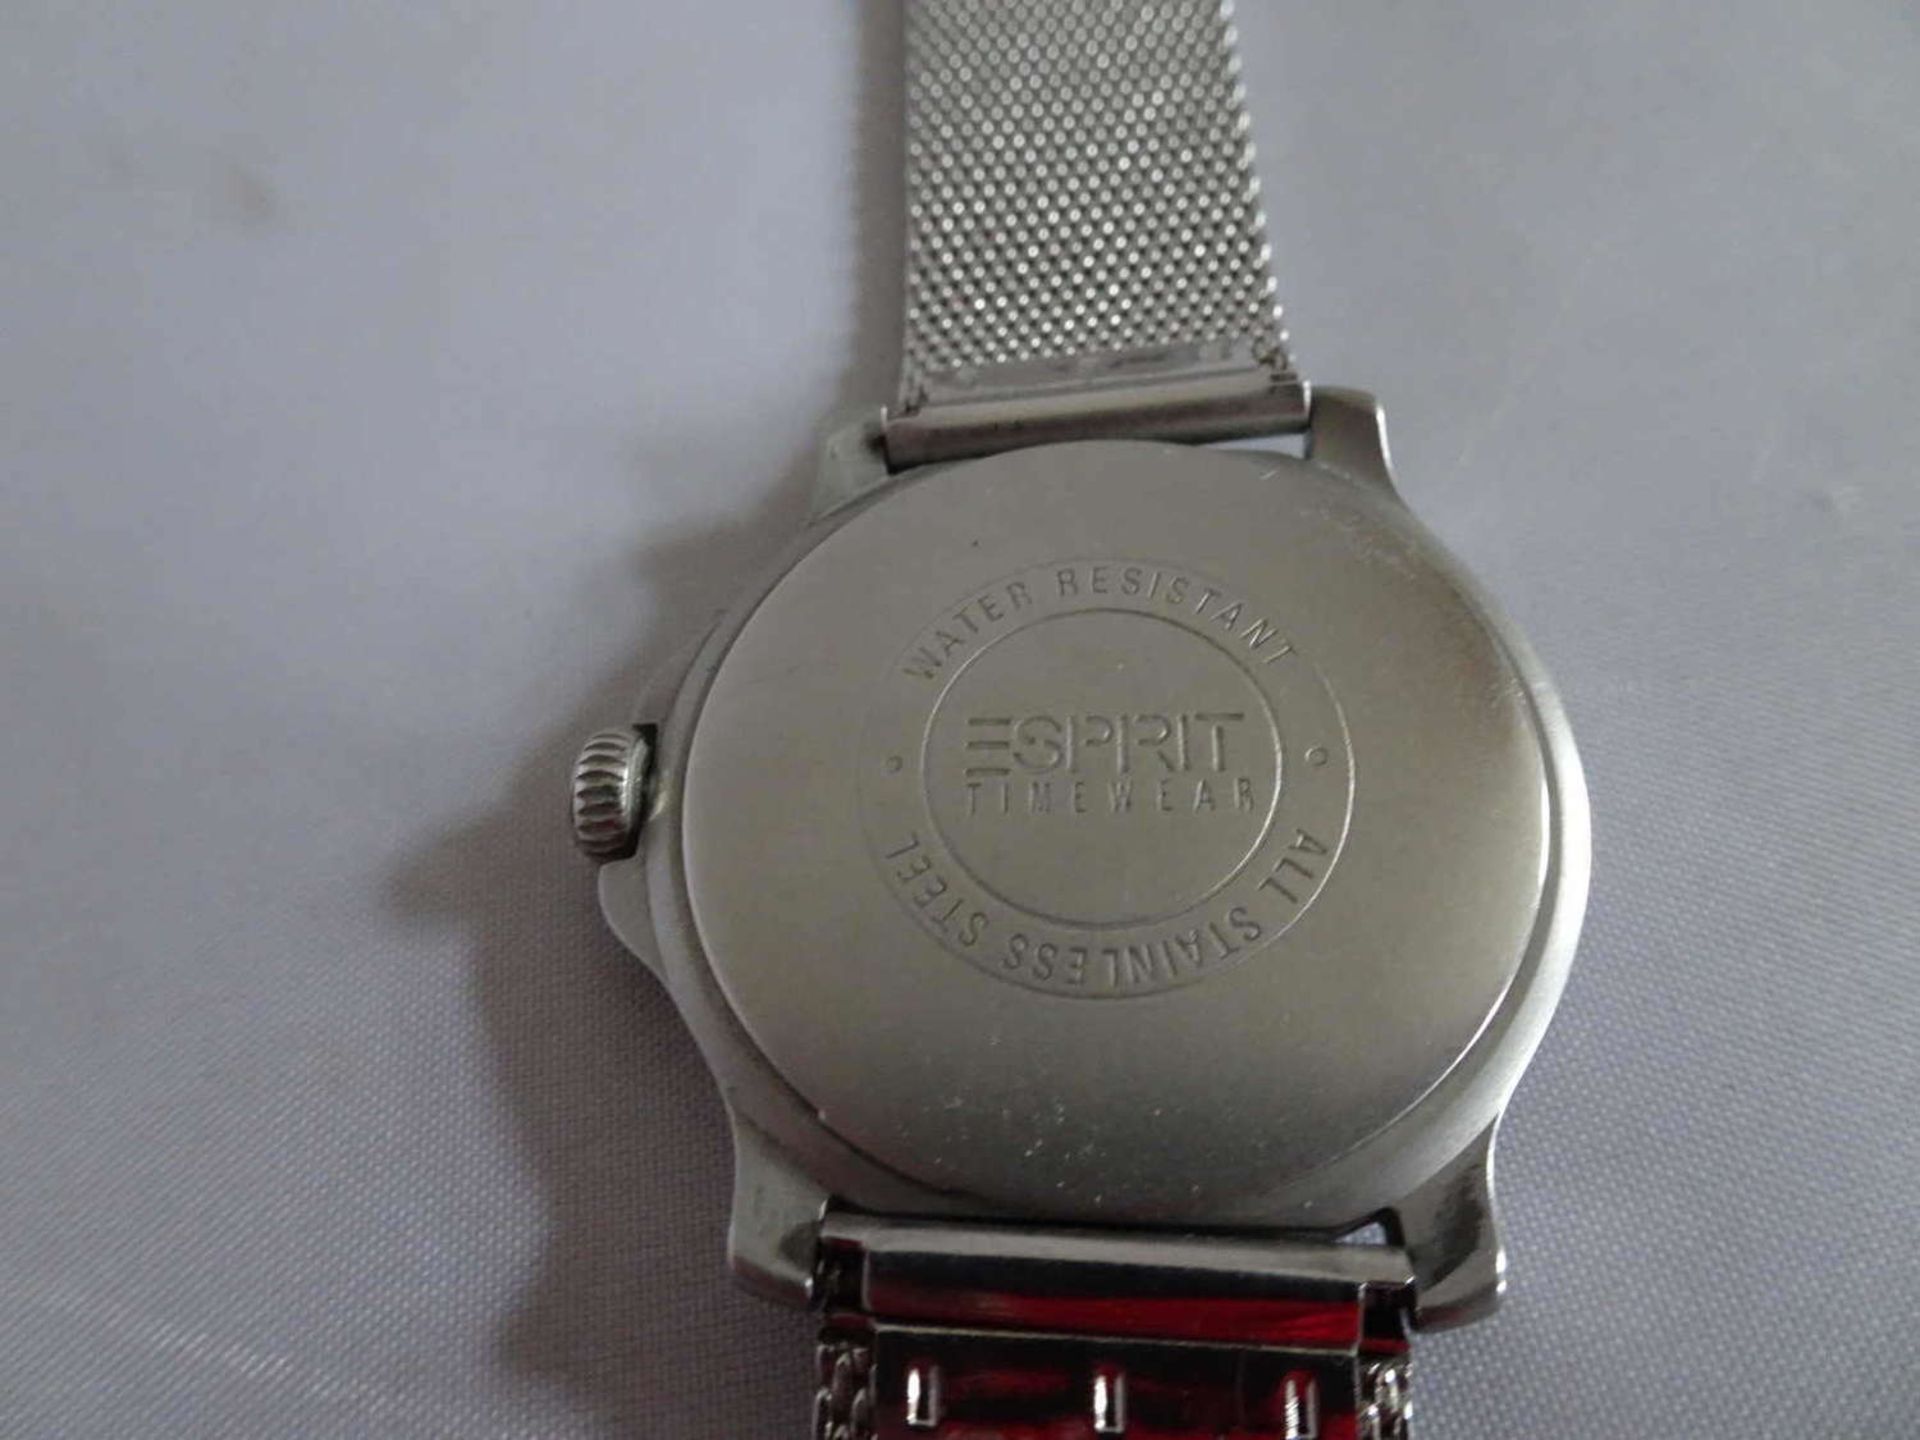 1 Taschenuhr Descartes, 17 Rubis, Funktion ok, sowie 1 Esprit Armbanduhr1 pocket watch Descartes, 17 - Bild 2 aus 2